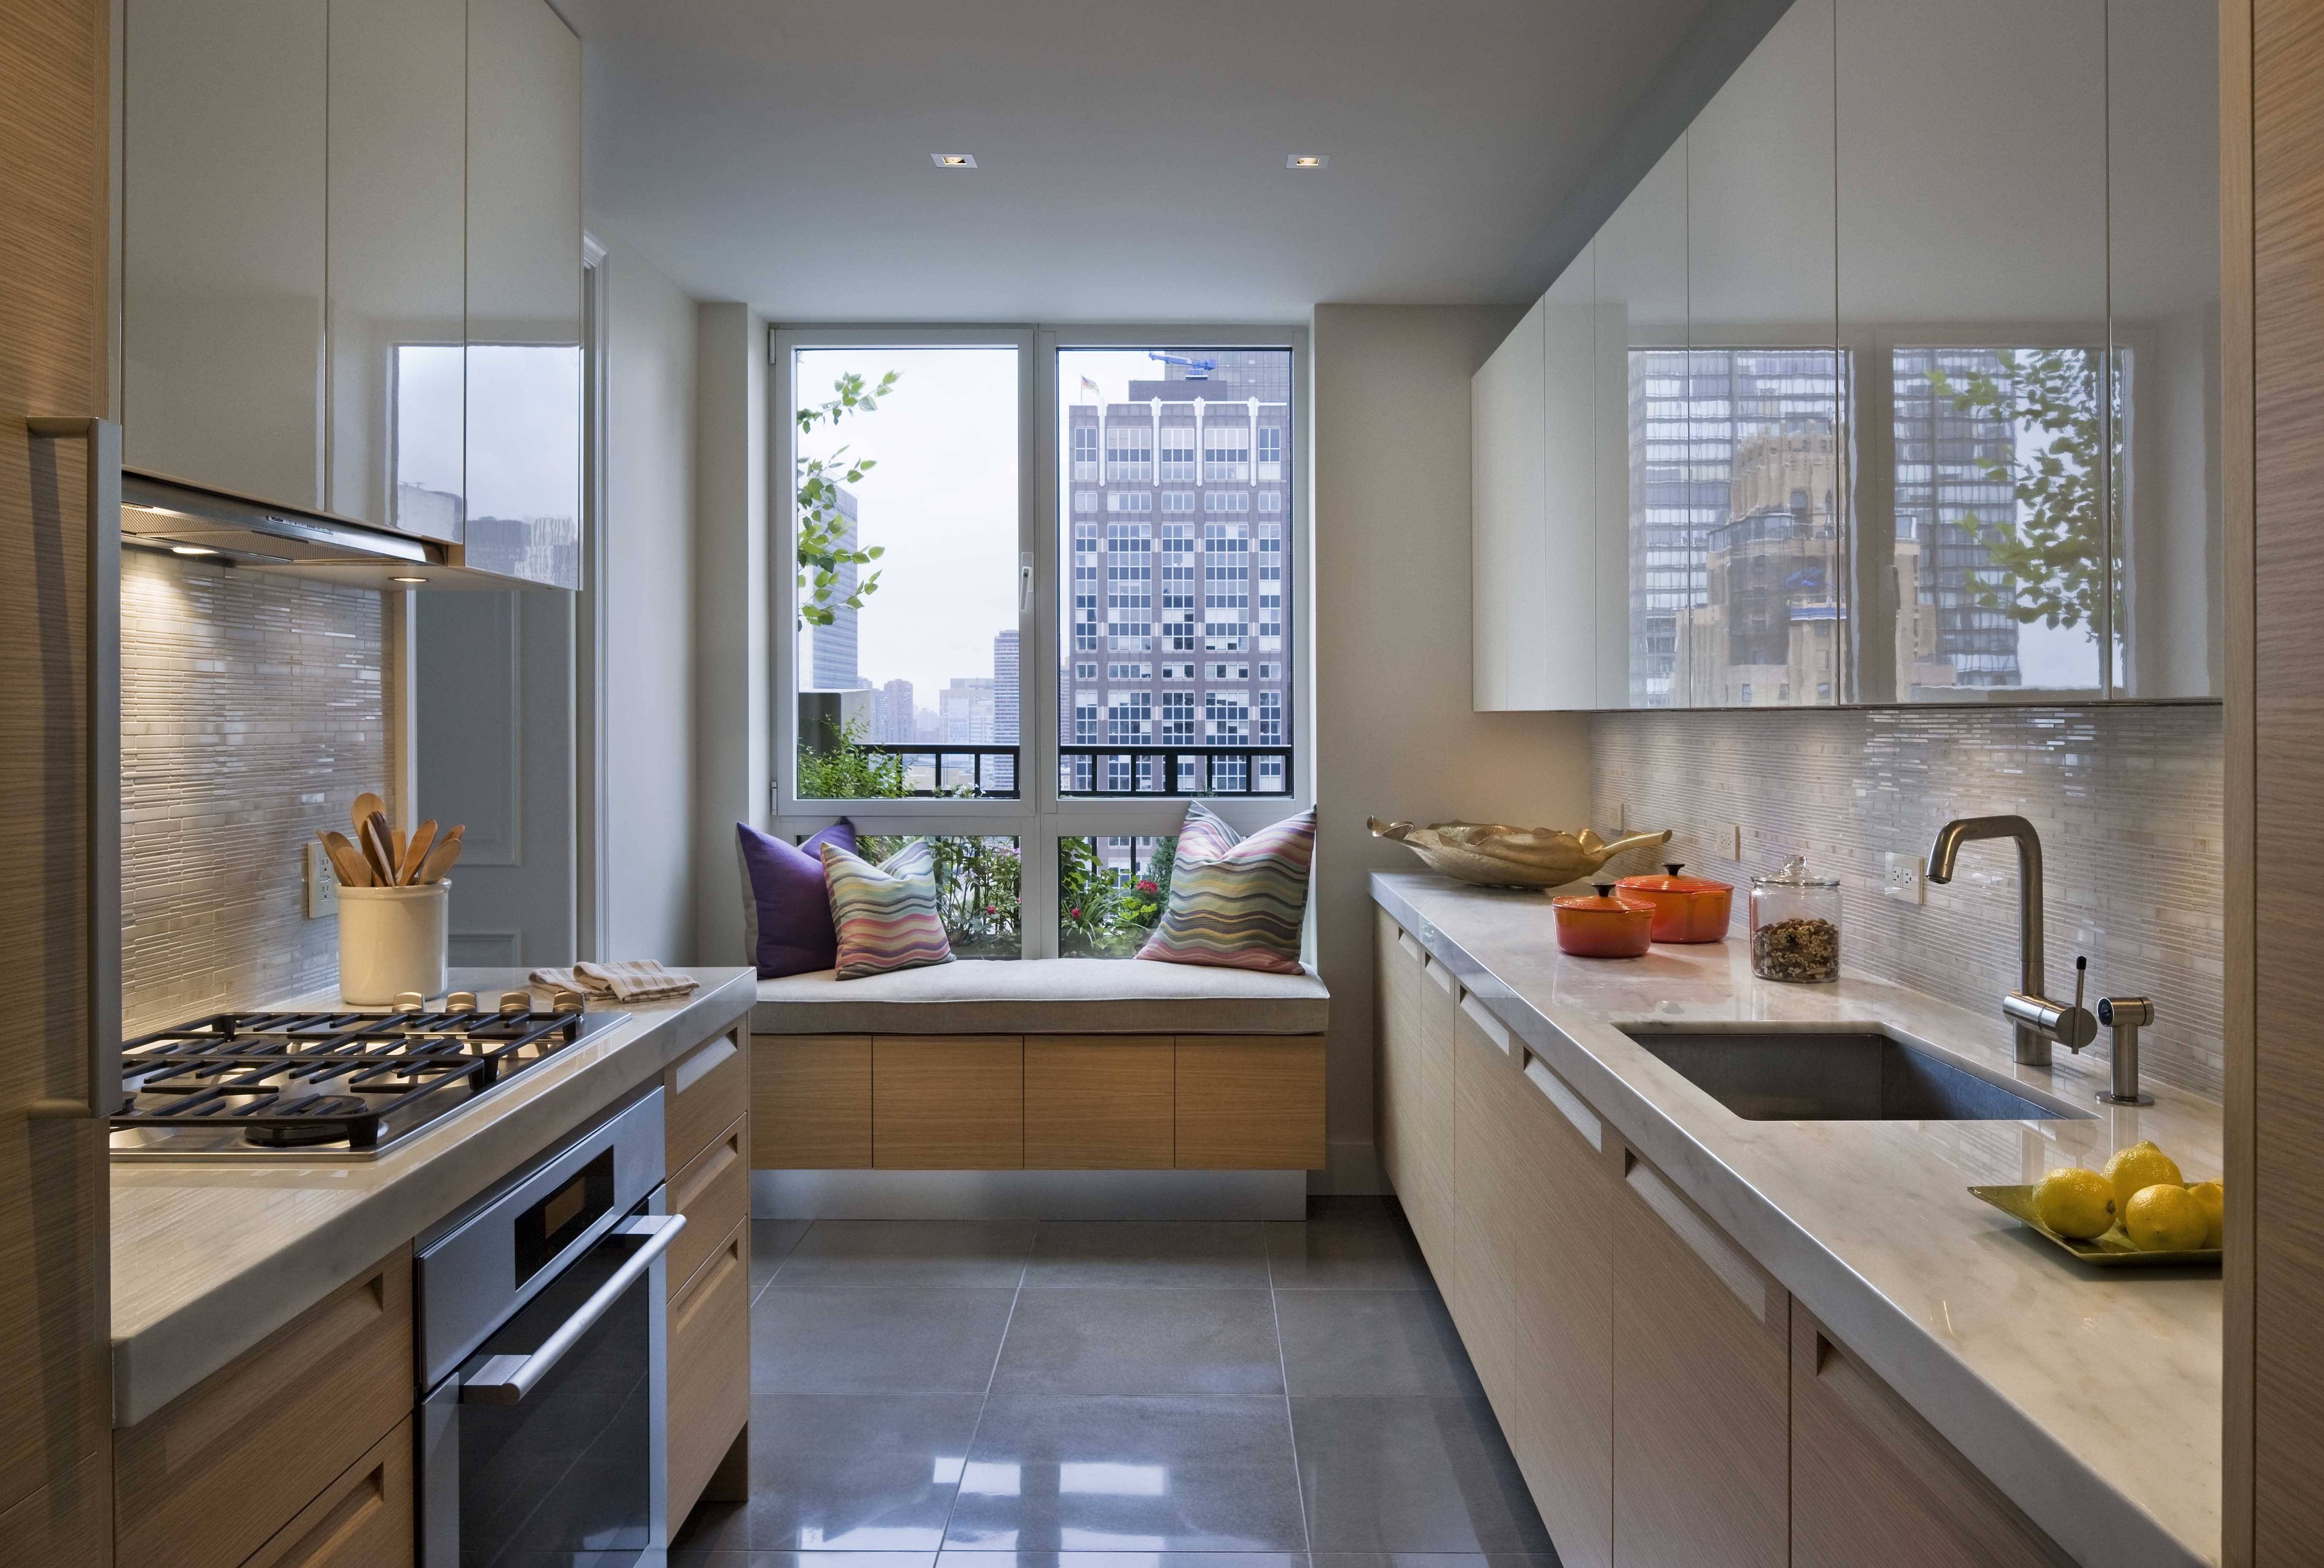 Дизайн кухни 4 кв м - дизайн и планировка маленькой кухни 4 квадратных метра, фото вариантов интерьера.